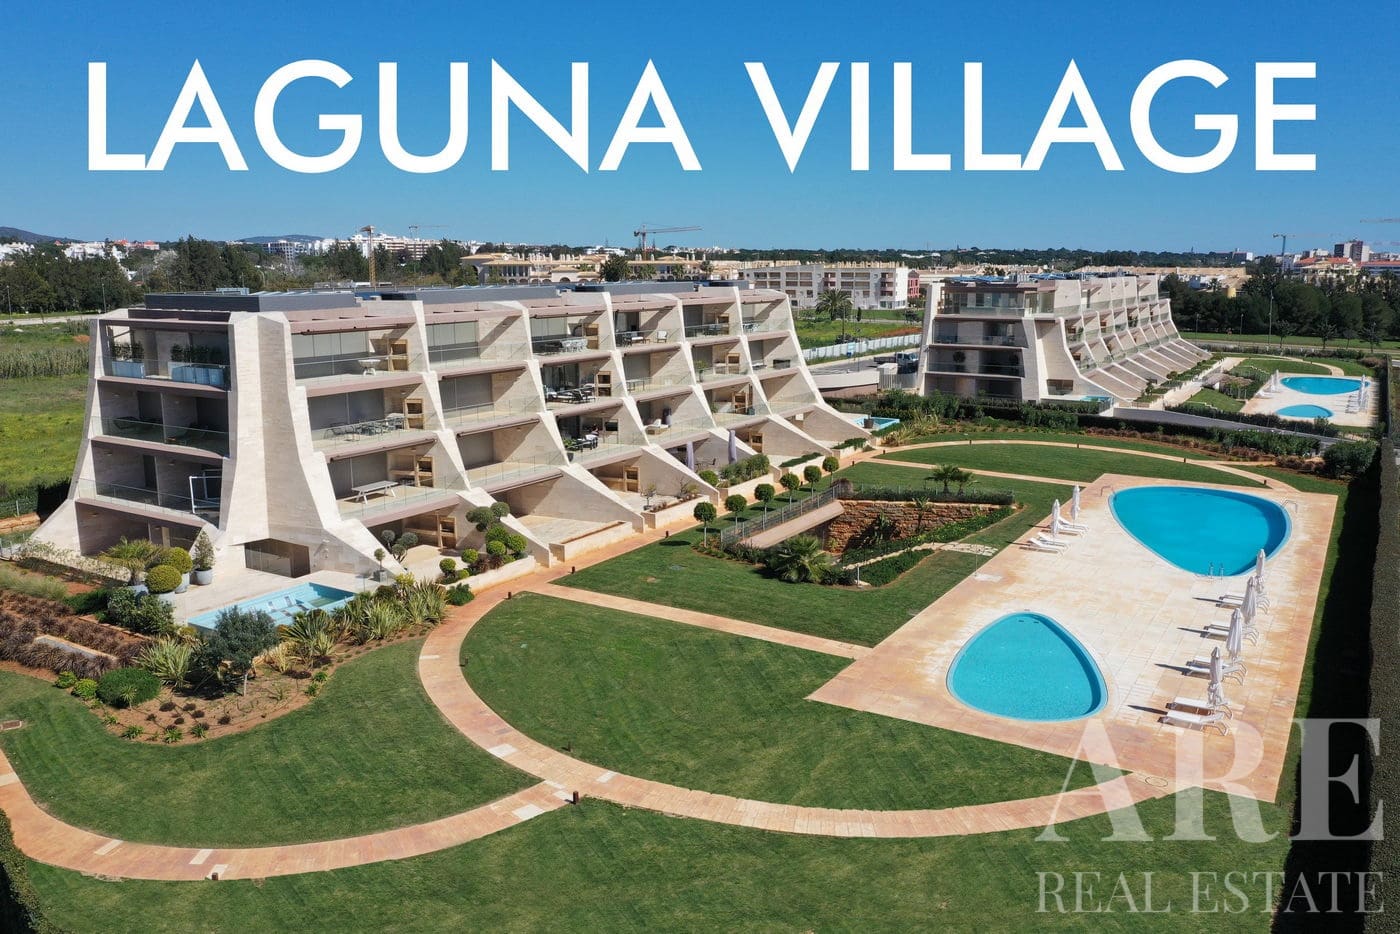 Presentación del condominio Laguna Village